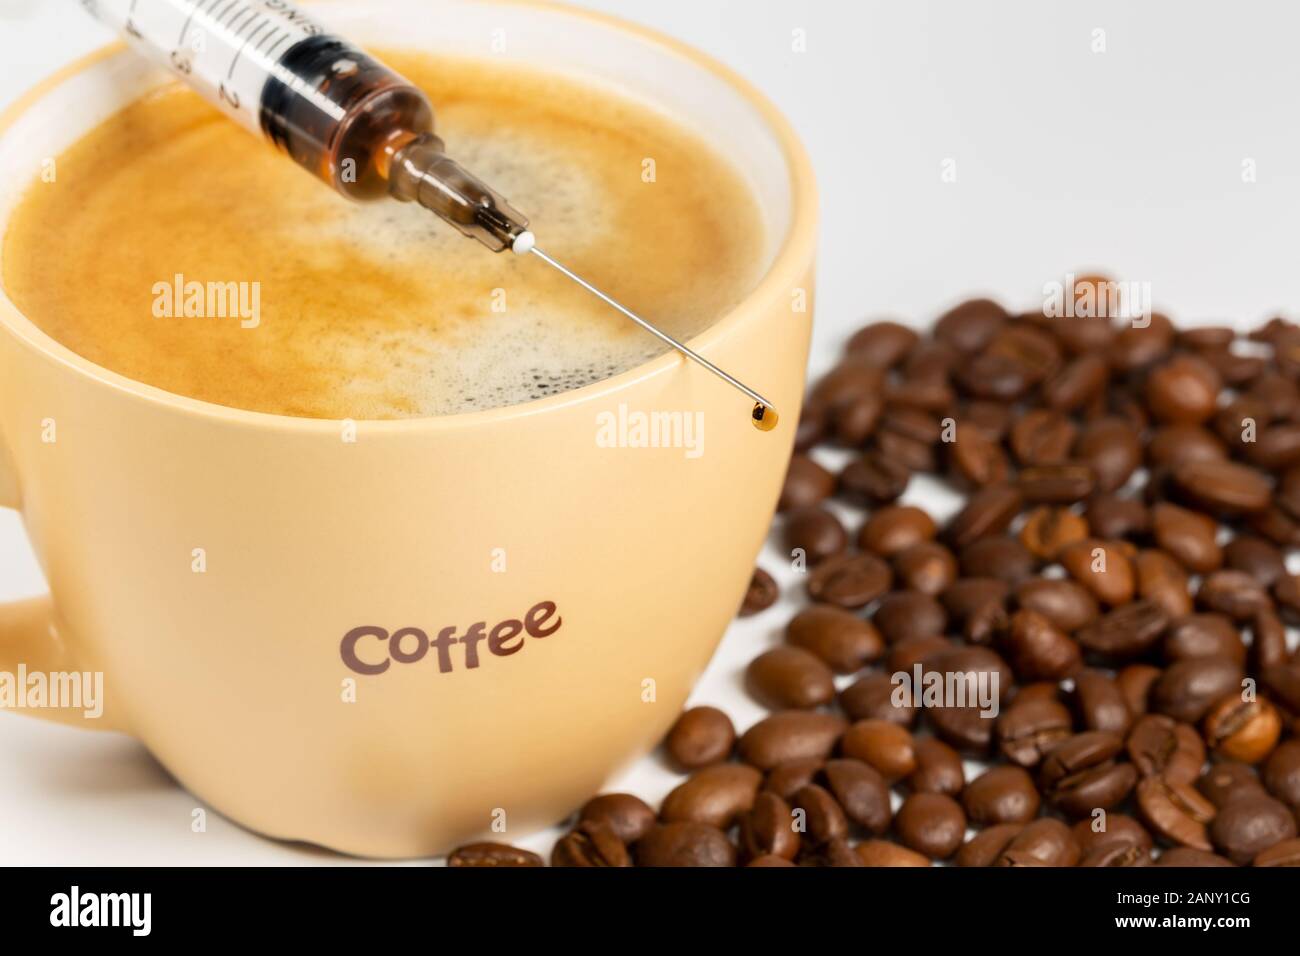 Tasse de café, des grains de café et d'une seringue libre. Concept de café de la toxicomanie. Banque D'Images